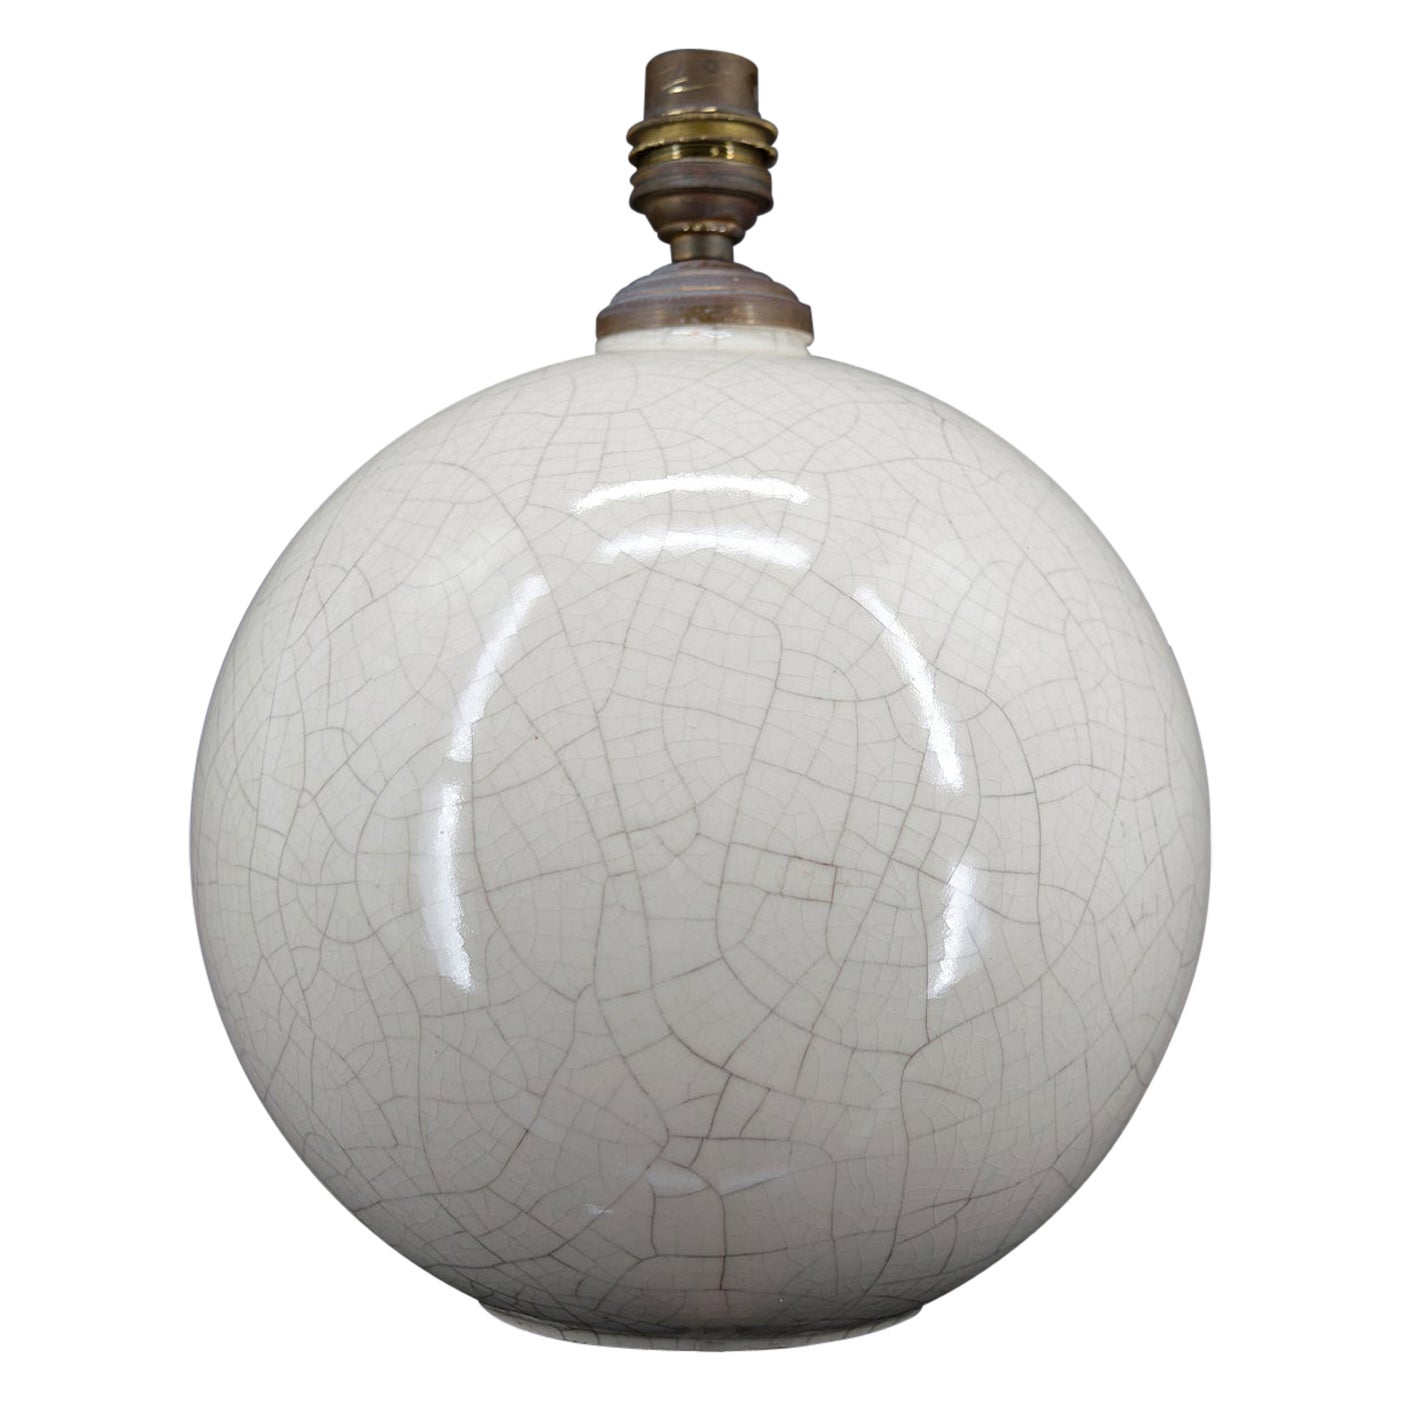 Lampe à boule blanche piquée, attribuée à Besnard pour Ruhlmann, France, circa 1920